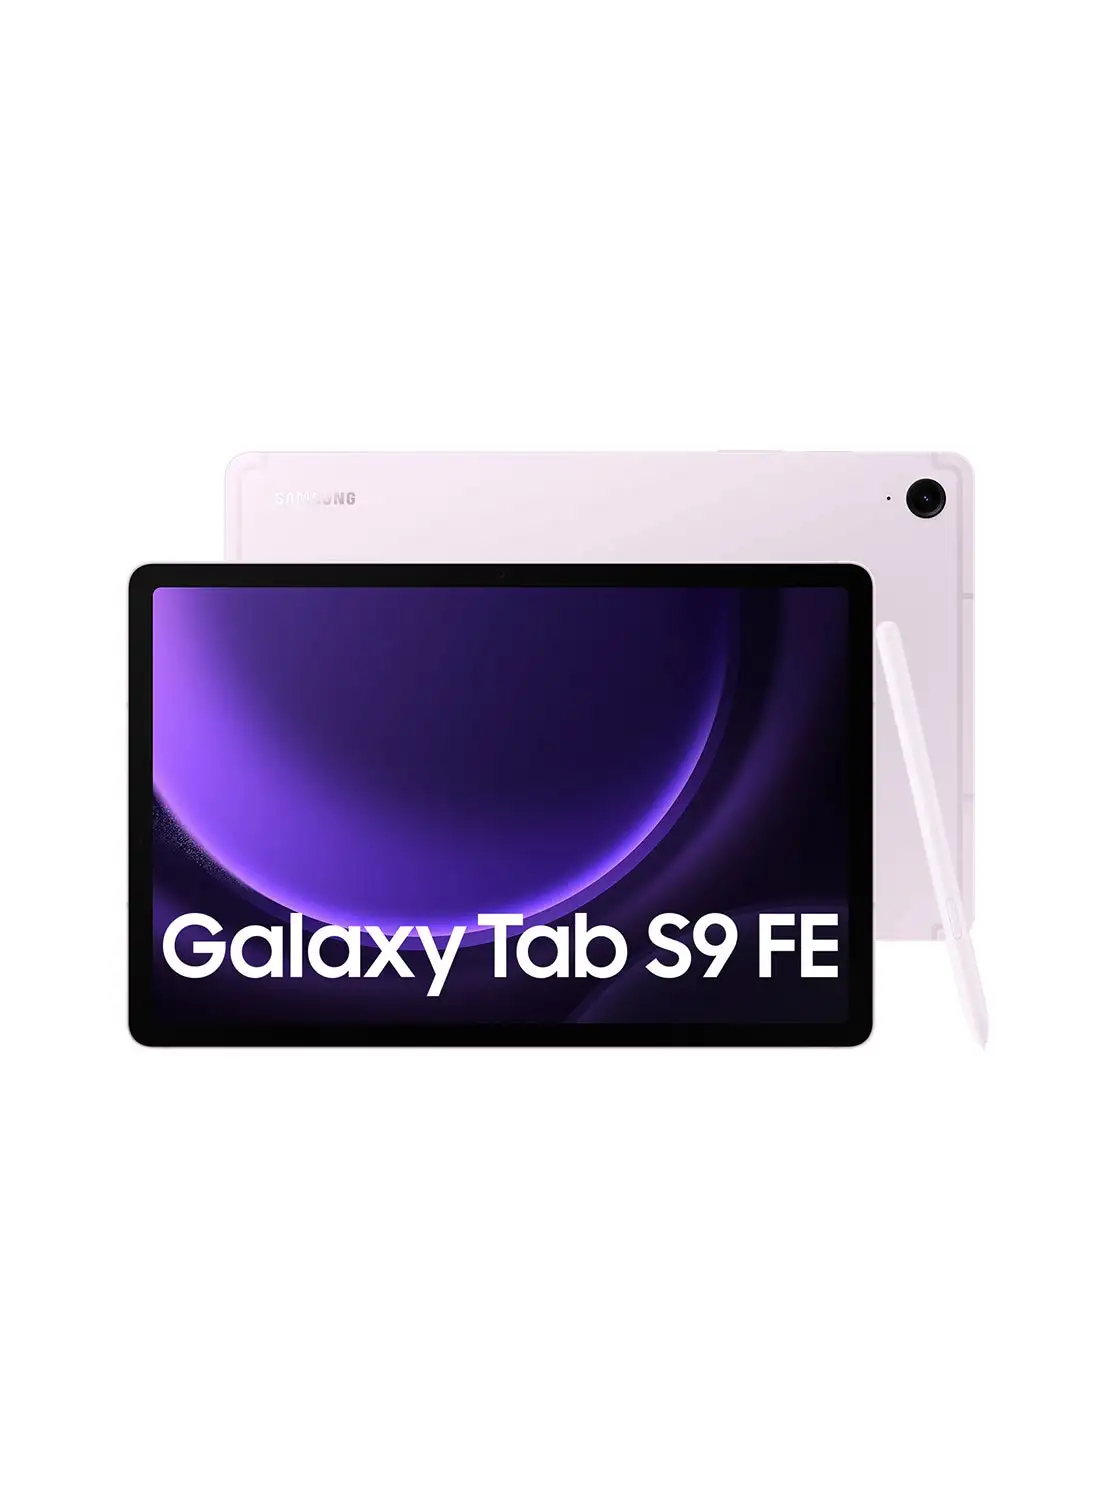 Samsung Galaxy Tab S9 FE Lavender 8GB RAM 256GB Wifi - Middle East Version